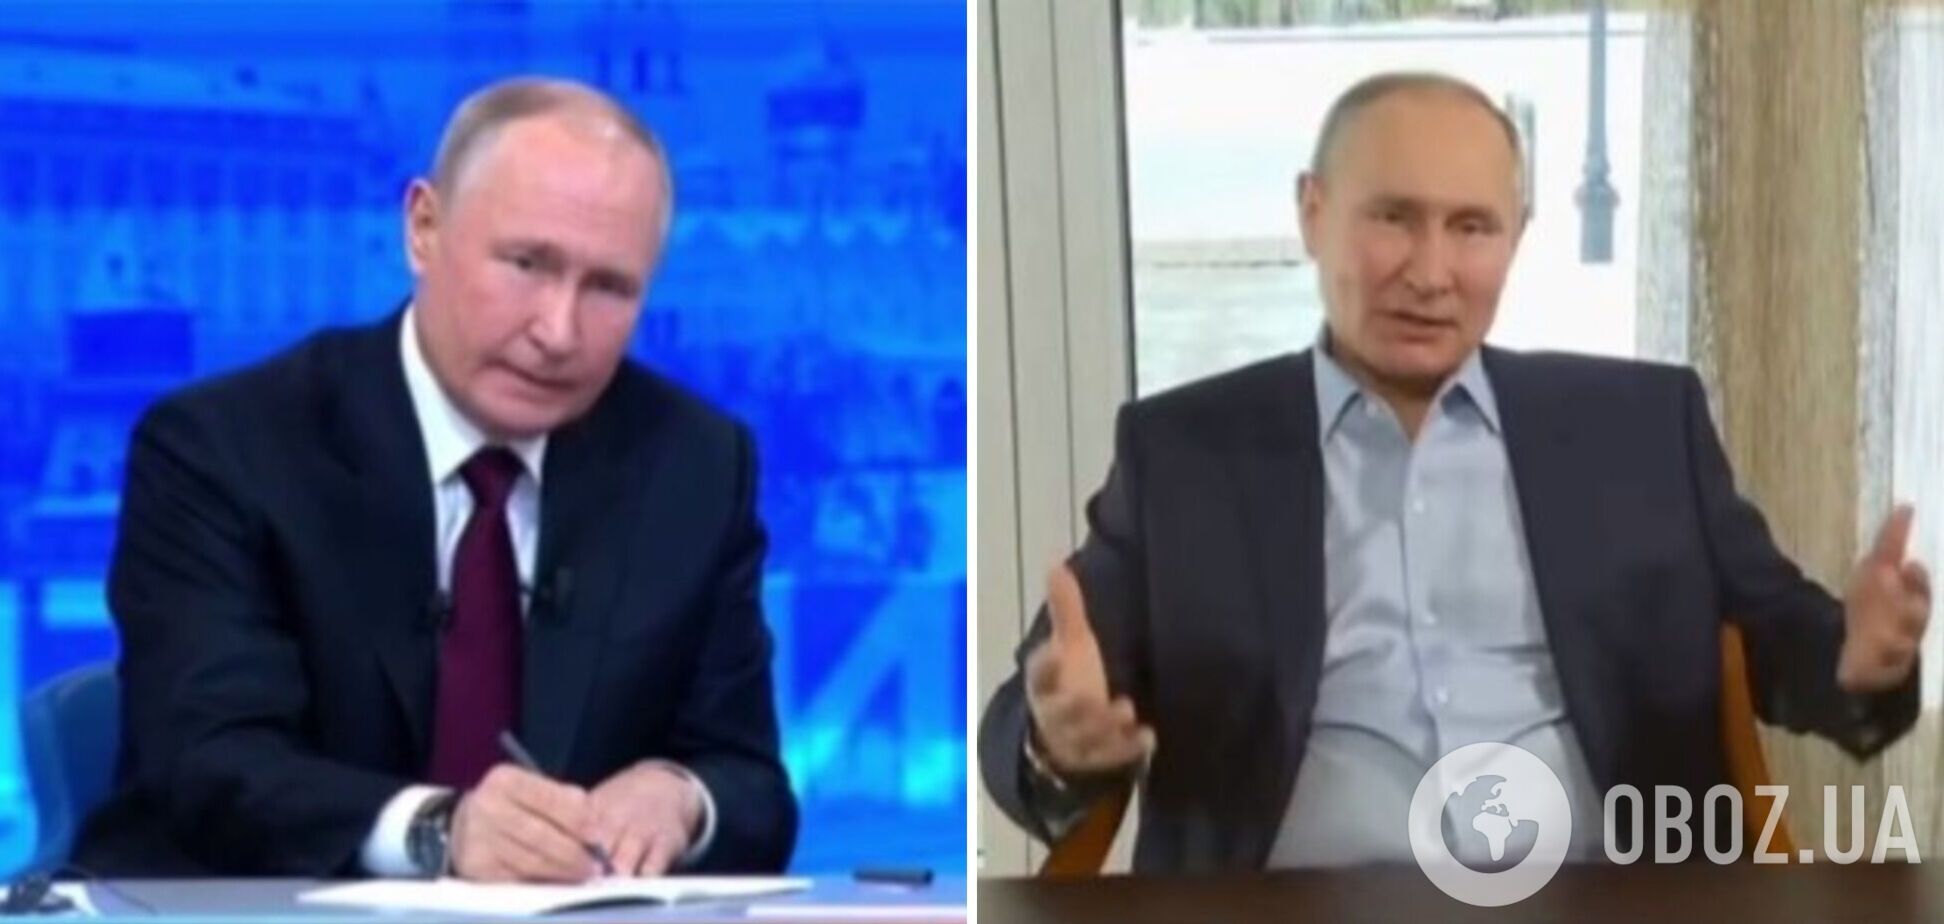 'Удмурт' и 'Банкетный' таки встретились: на 'прямой линии' Путина появился его двойник, россияне подняли на смех 'спектакль'. Видео